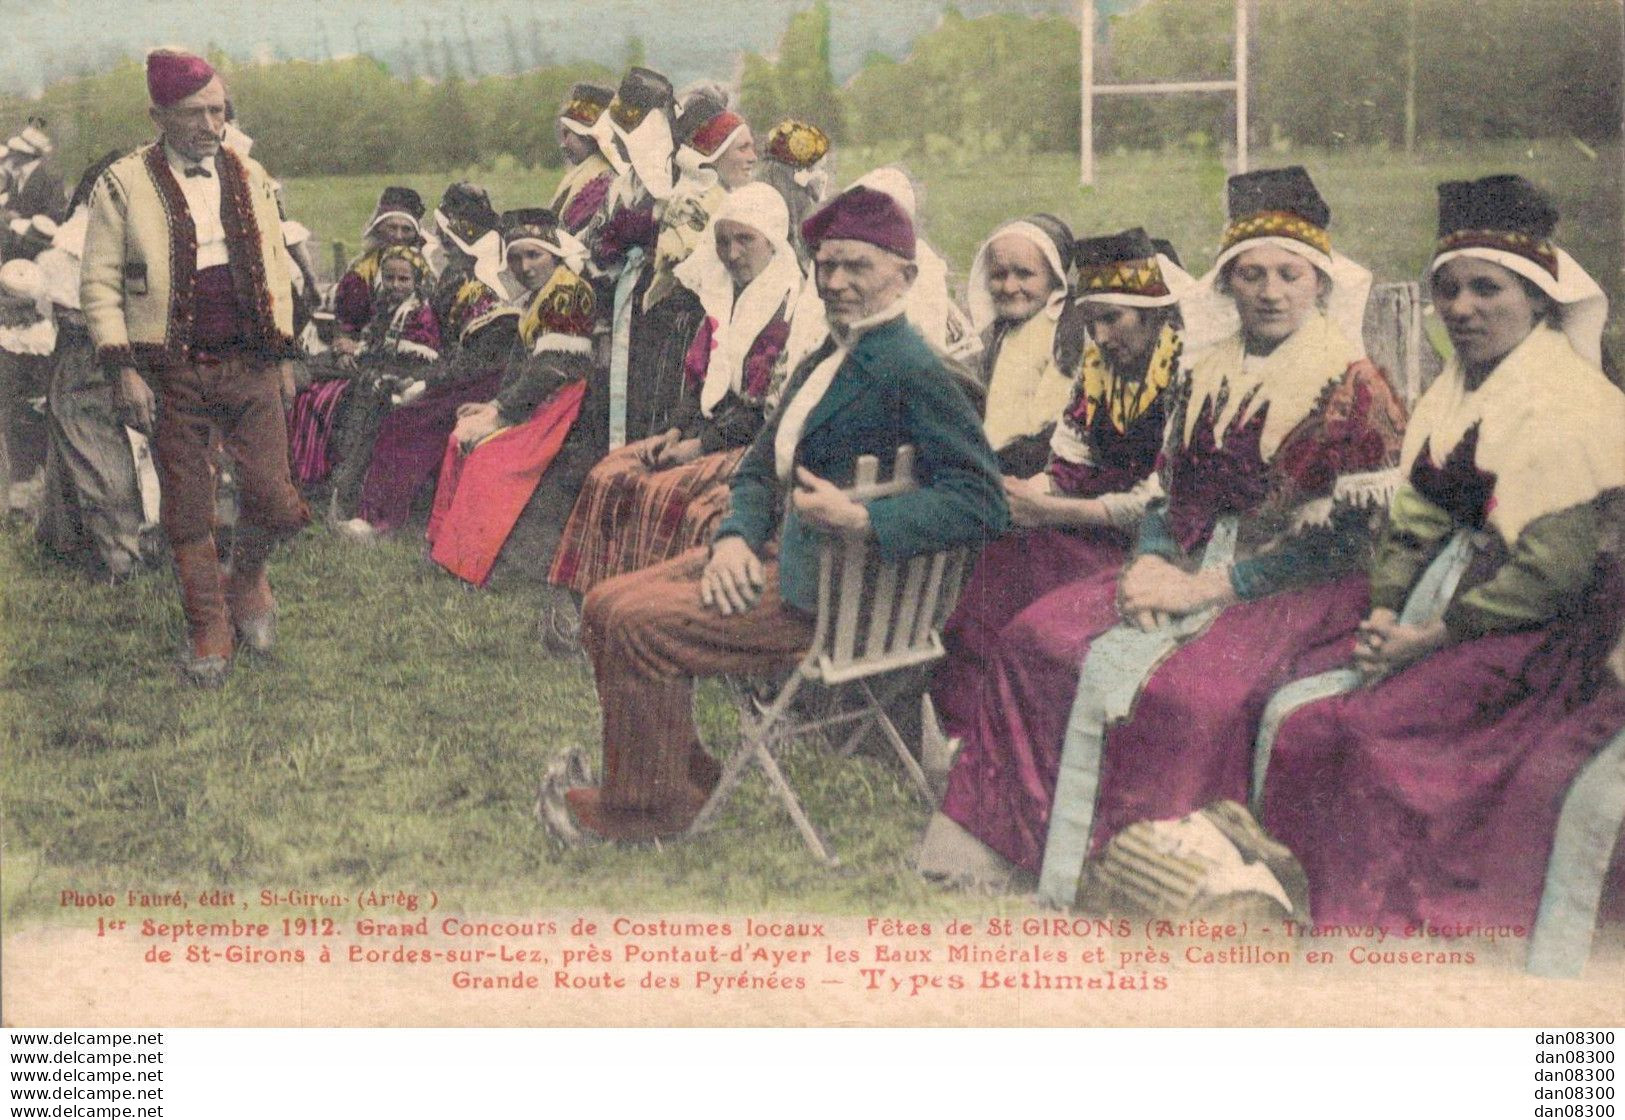 09 01 SEPTEMBRE 1912 GRAND CONCOURS DE COSTUMES LOCAUX FETES DE SAINT GIRONS - Kostums